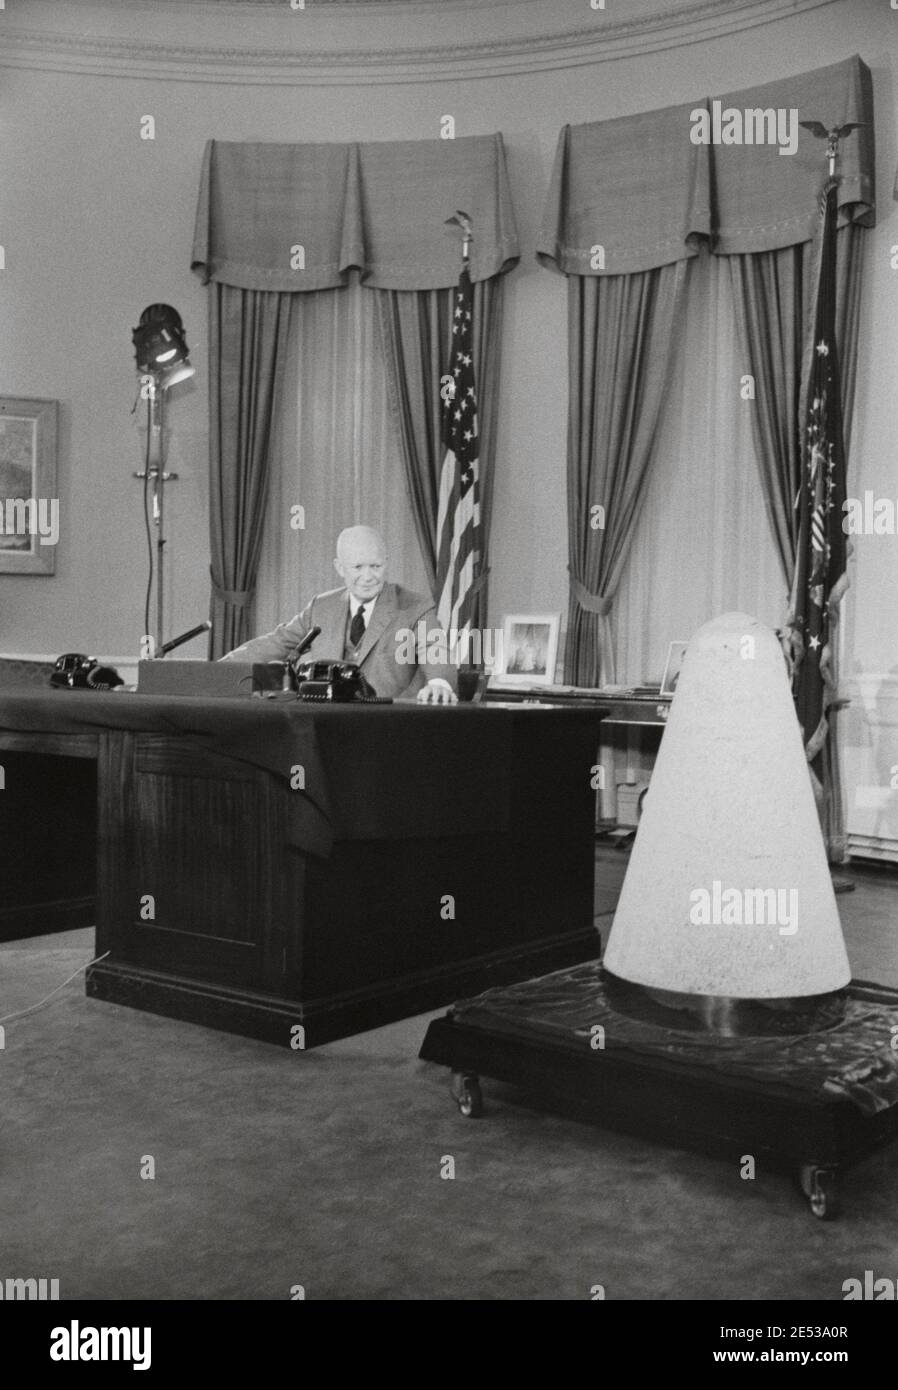 Le président Dwight Eisenhower prononcera un discours télévisé à la Maison Blanche sur la science et la sécurité nationale, à côté du nez d'un expérimental Banque D'Images